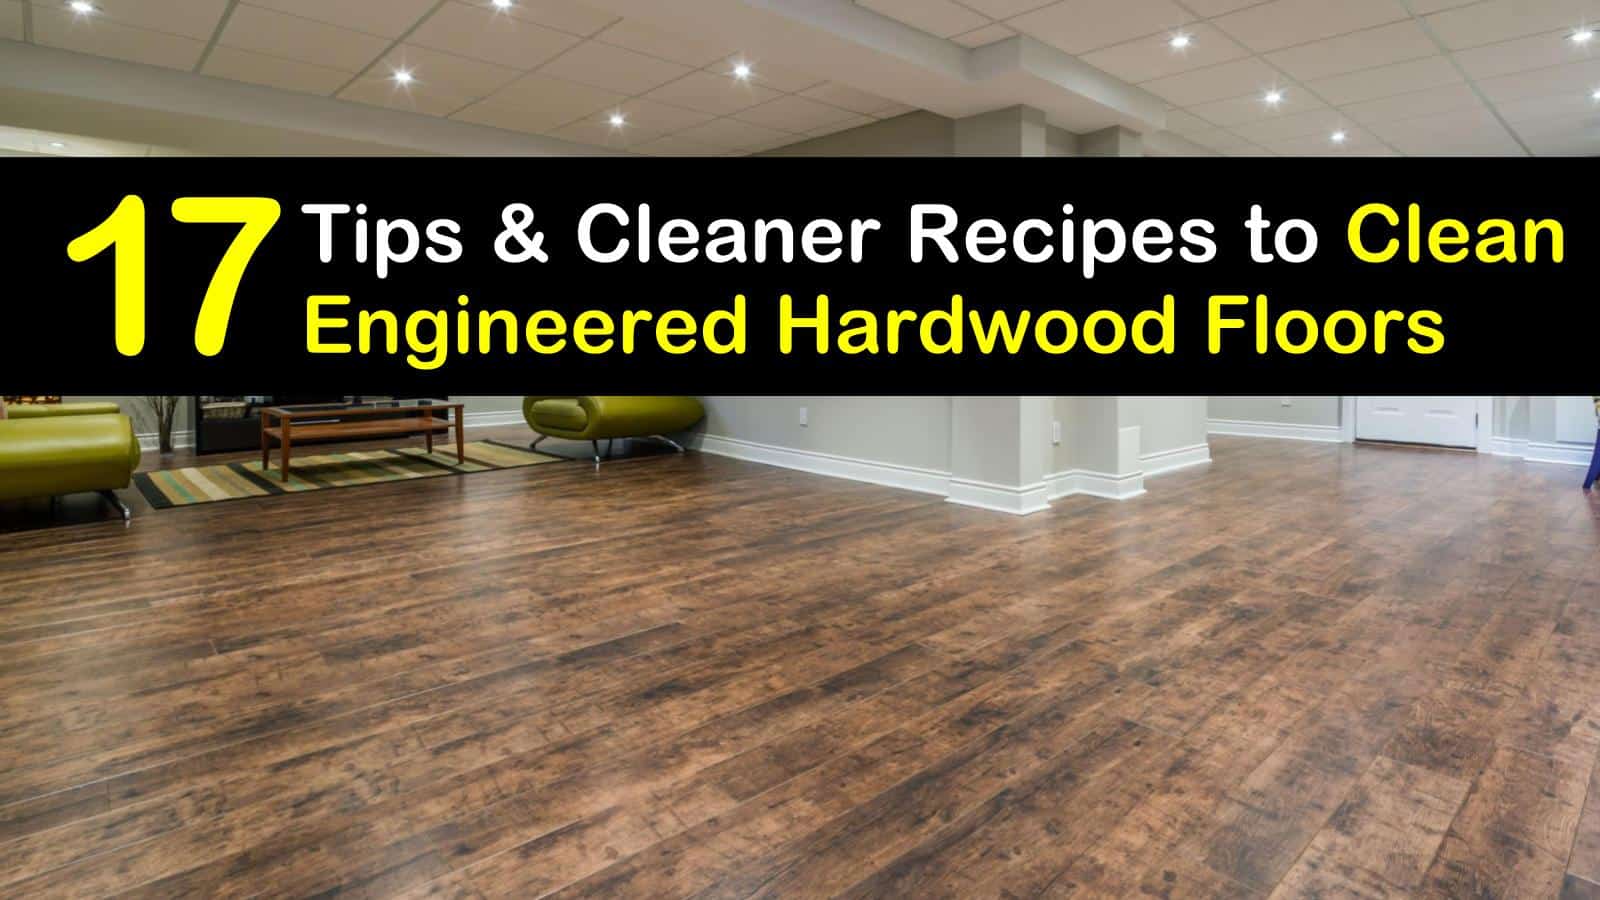 Clean Engineered Hardwood Floors, Washing Engineered Hardwood Floors